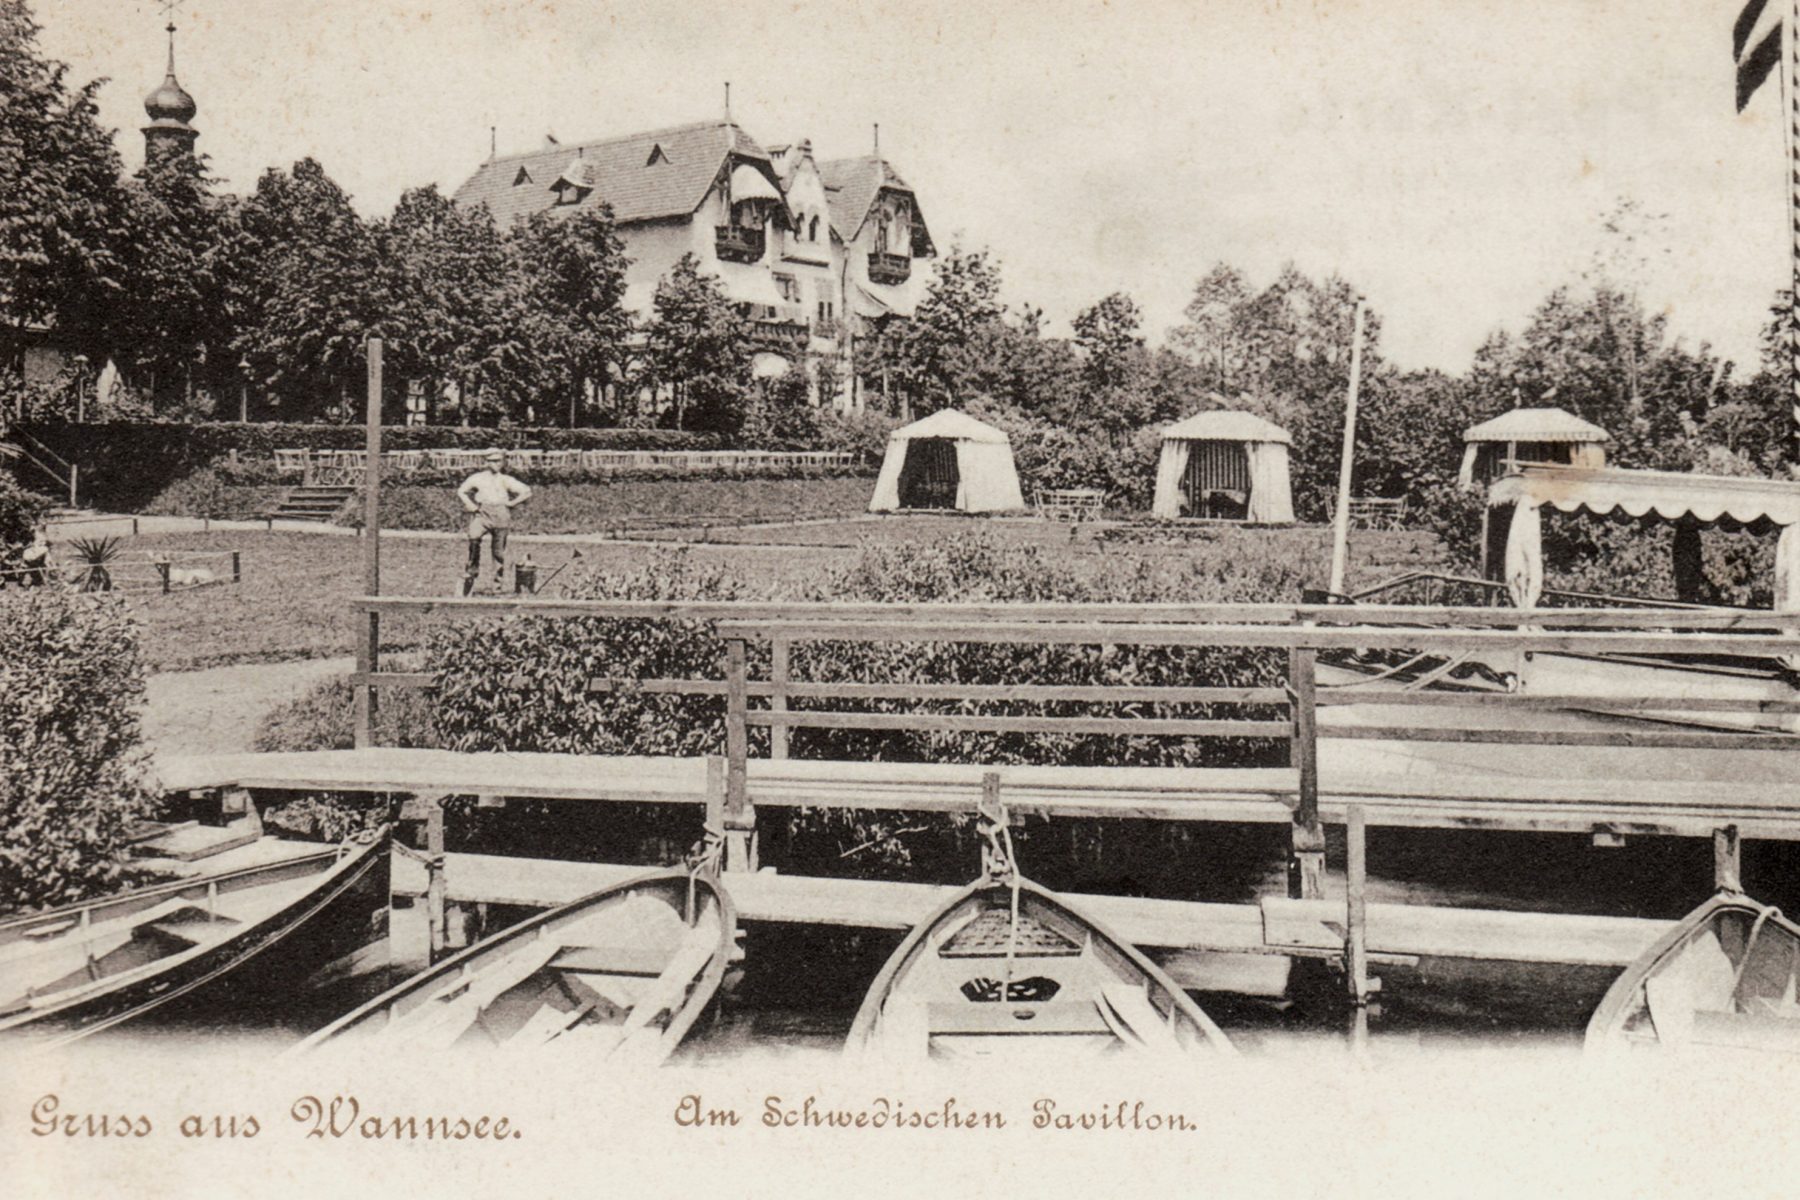 Historische Postkarte des Schwedischen Pavillons mit der Aufschrift „Gruss aus Wannsee“